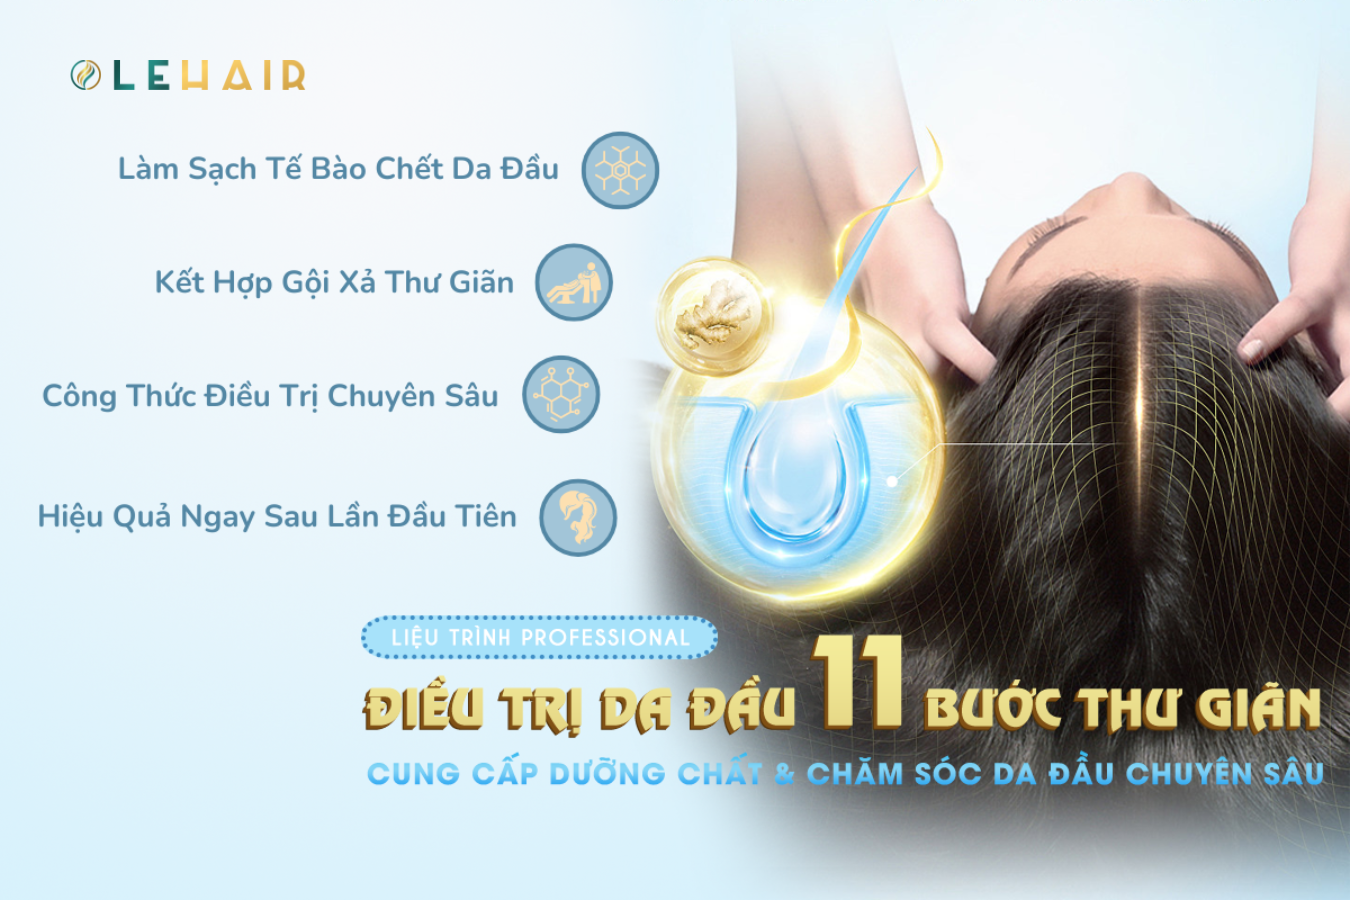 LIỆU TRÌNH ĐIỀU TRỊ DA ĐẦU 11 BƯỚC THƯ GIÃN (start skin treatment process 11 relaxing steps)